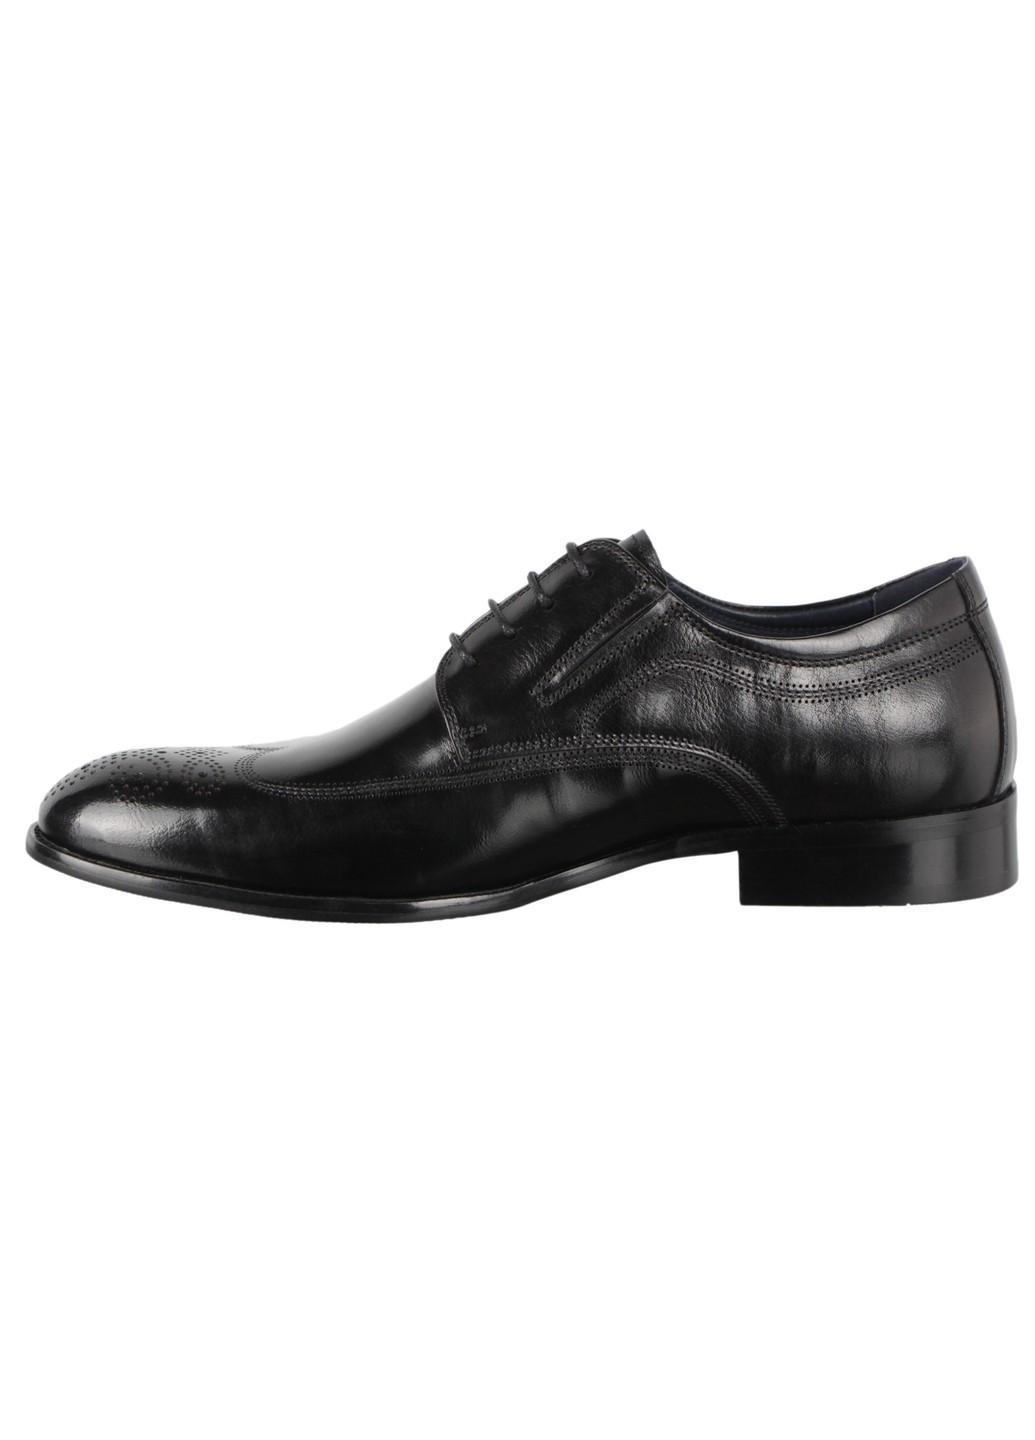 Черные мужские туфли классические 198379 Buts без шнурков